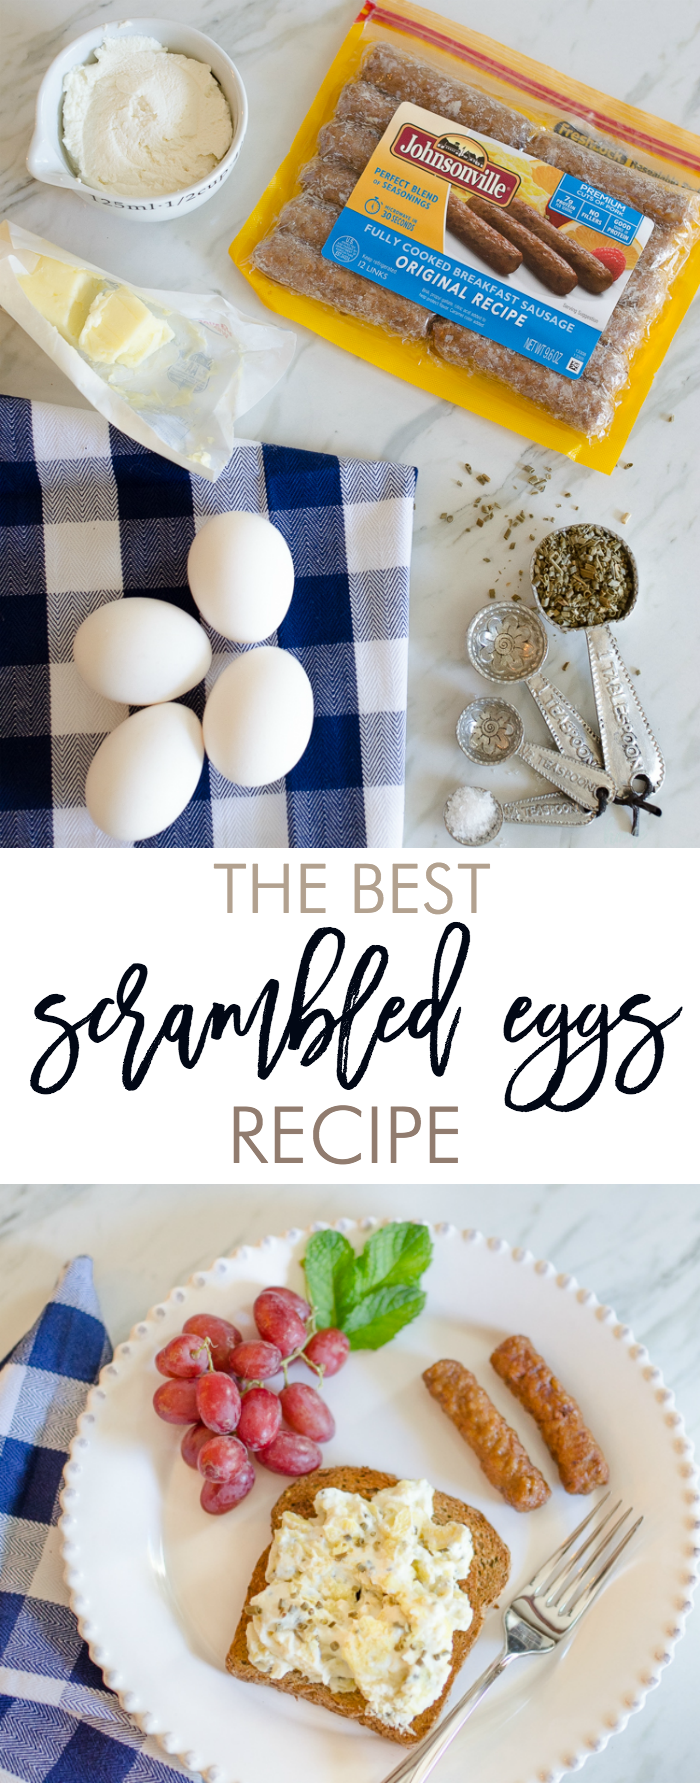 Best scrambled eggs recipe